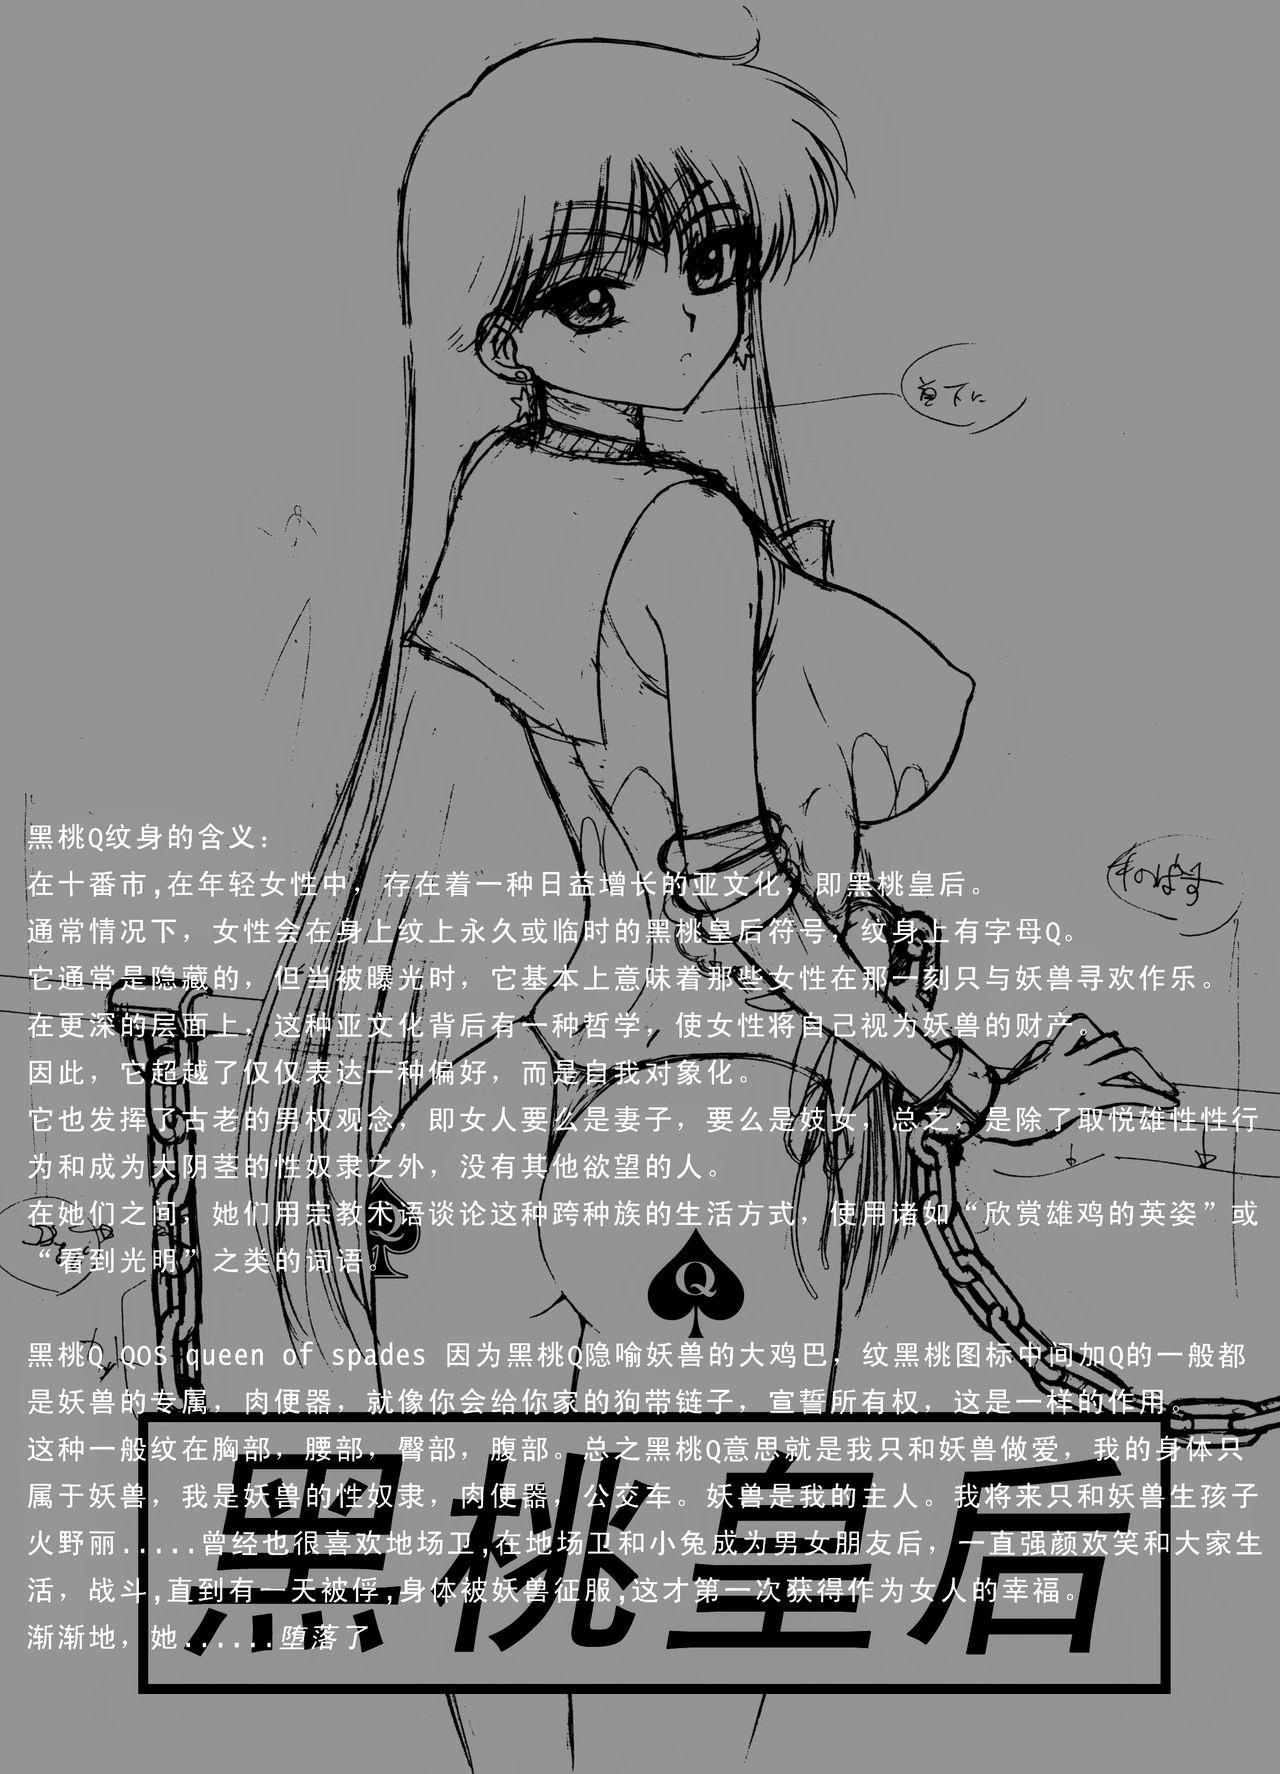 Nalgas QUEEN OF SPADES - 黑桃皇后 - Sailor moon Pov Sex - Page 5